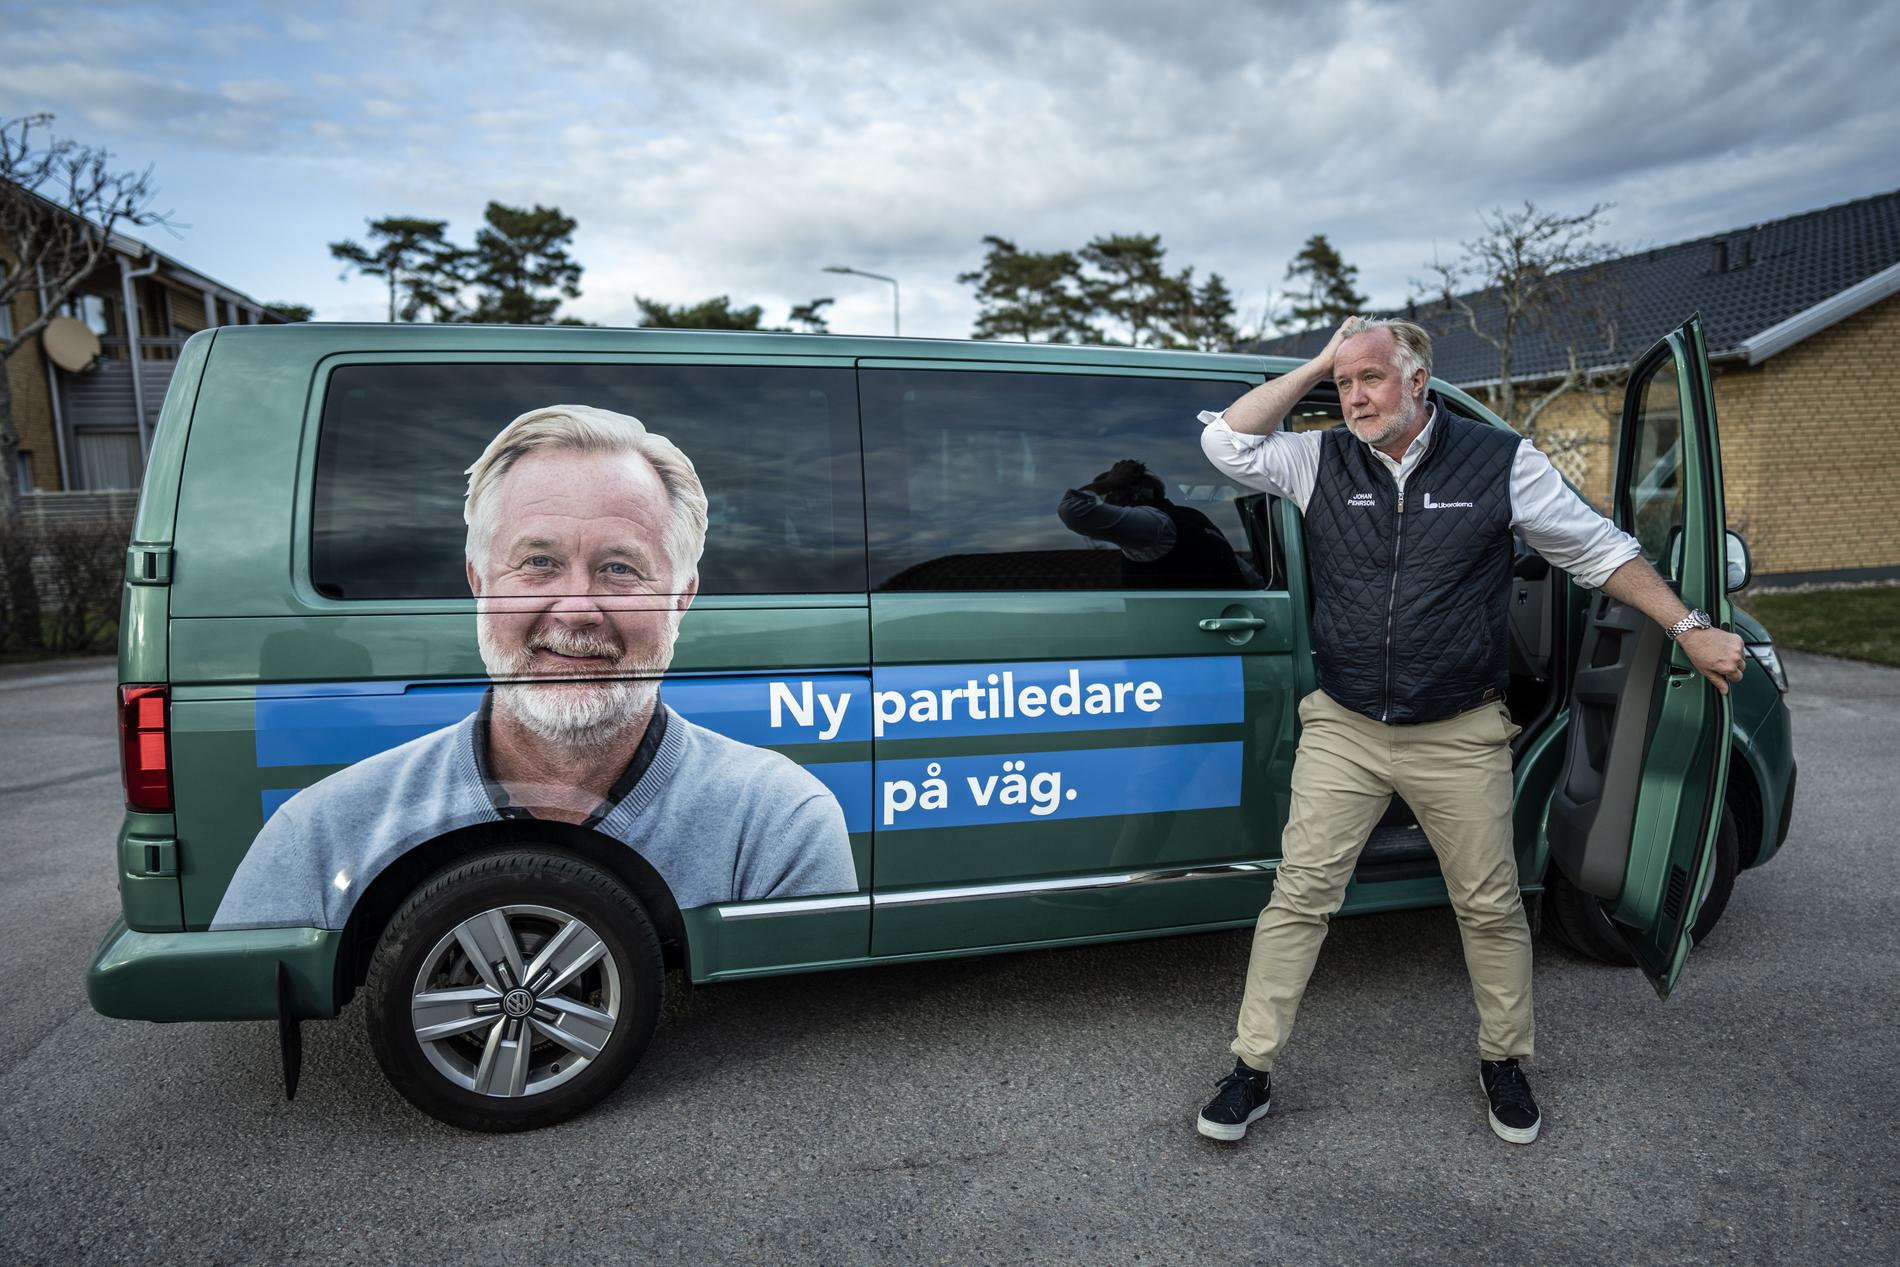 Förtroendet för Liberalernas partiledare Johan Pehrson har ökat ordentligt, visar Aftonbladet/Demoskops mätning.